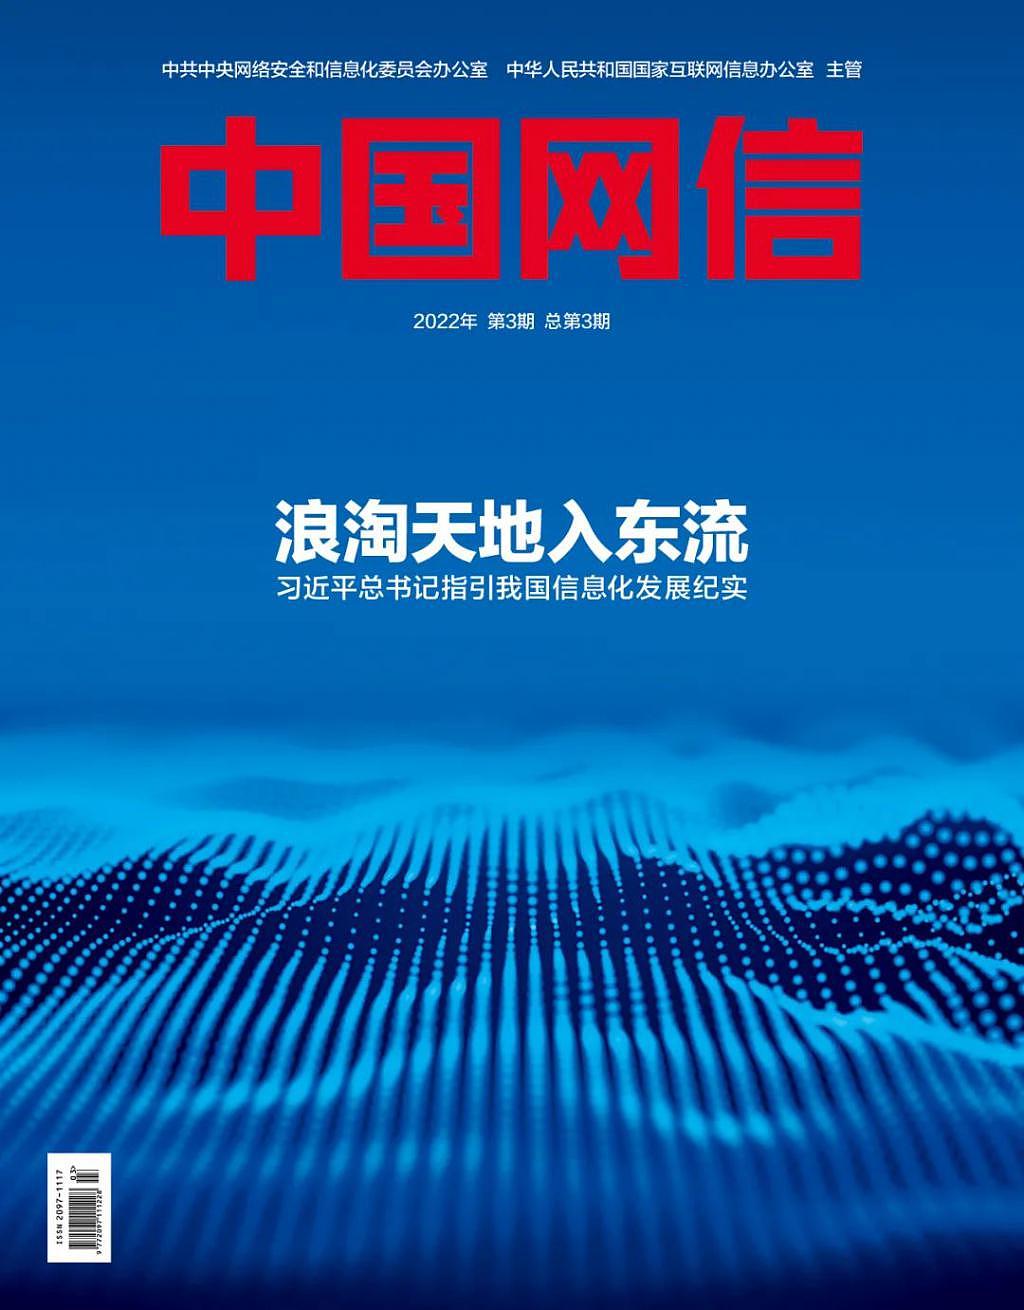 《中国网信》杂志发表《习近平总书记指引我国信息化发展纪实》 - 1